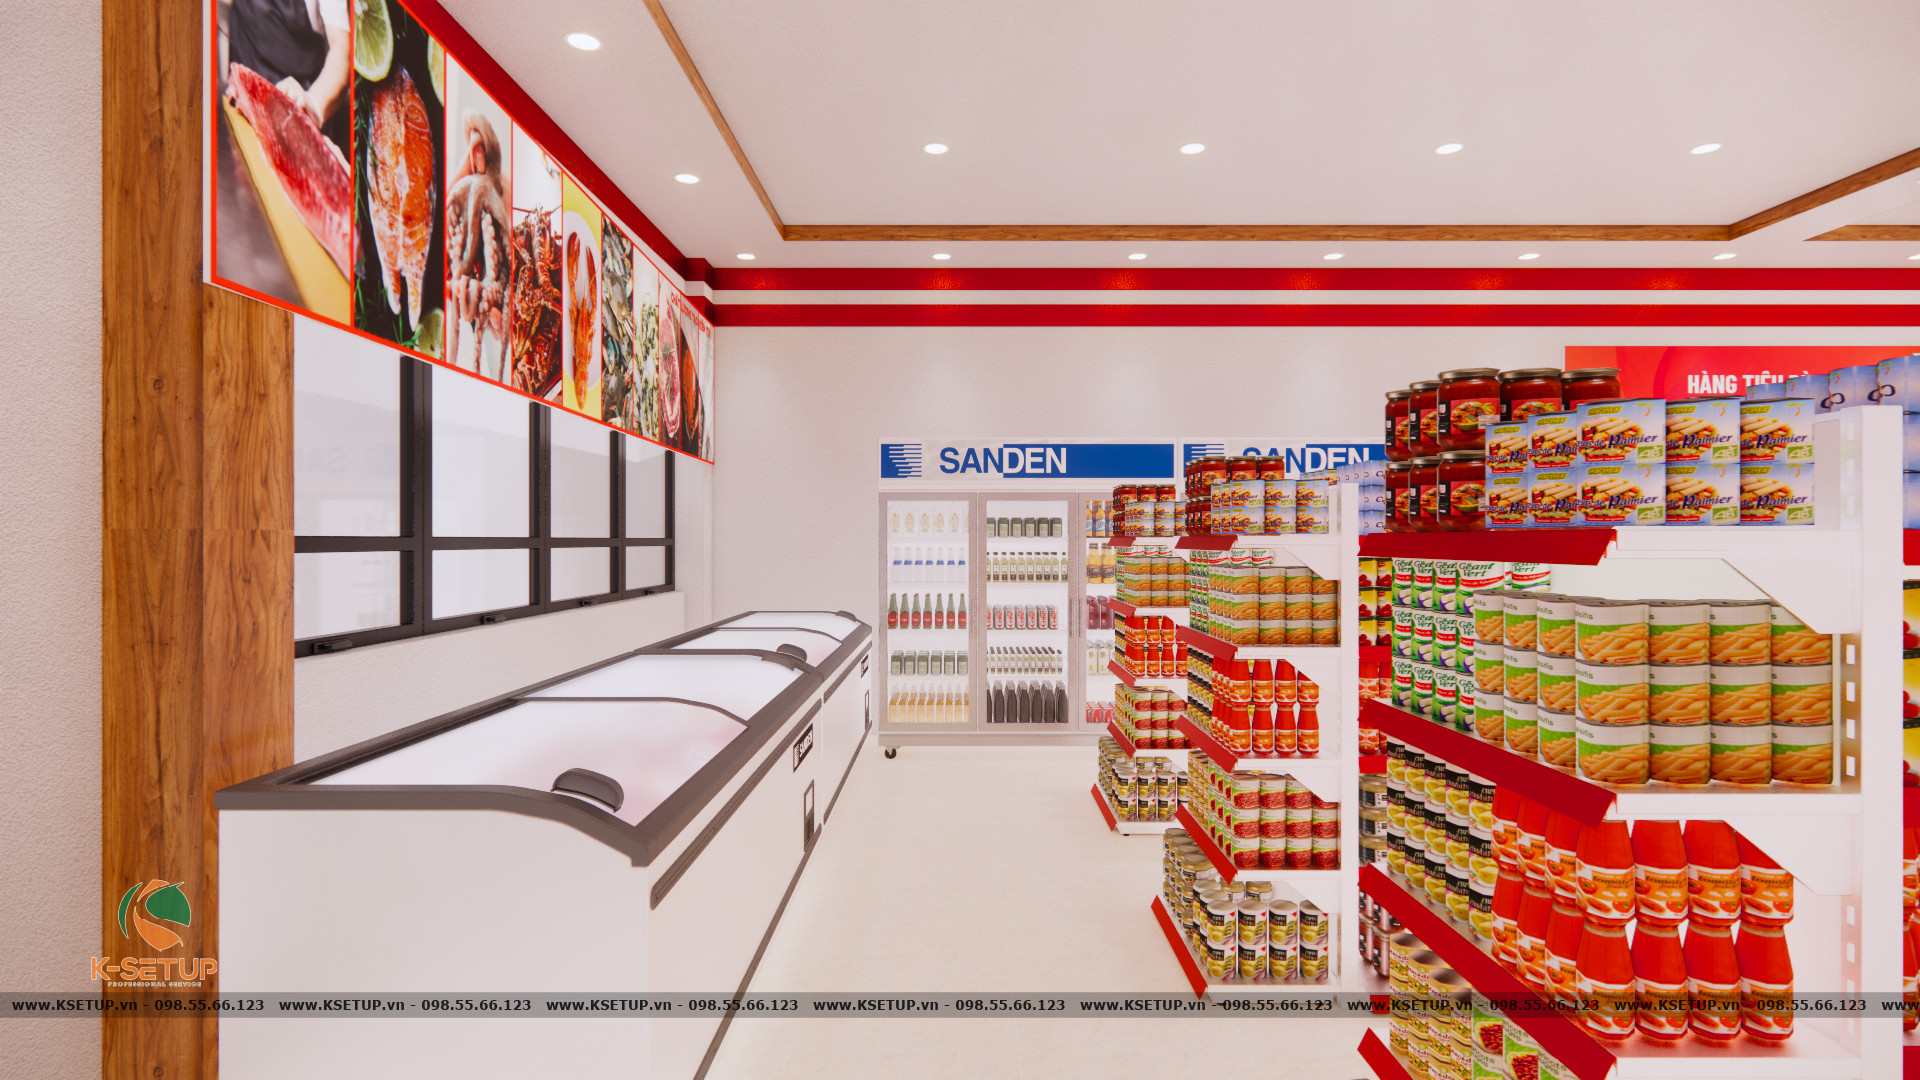 Bạn có thể xem bản vẽ 3D của đơn vị cung cấp dịch vụ setup siêu thị để đánh giá chất lượng.